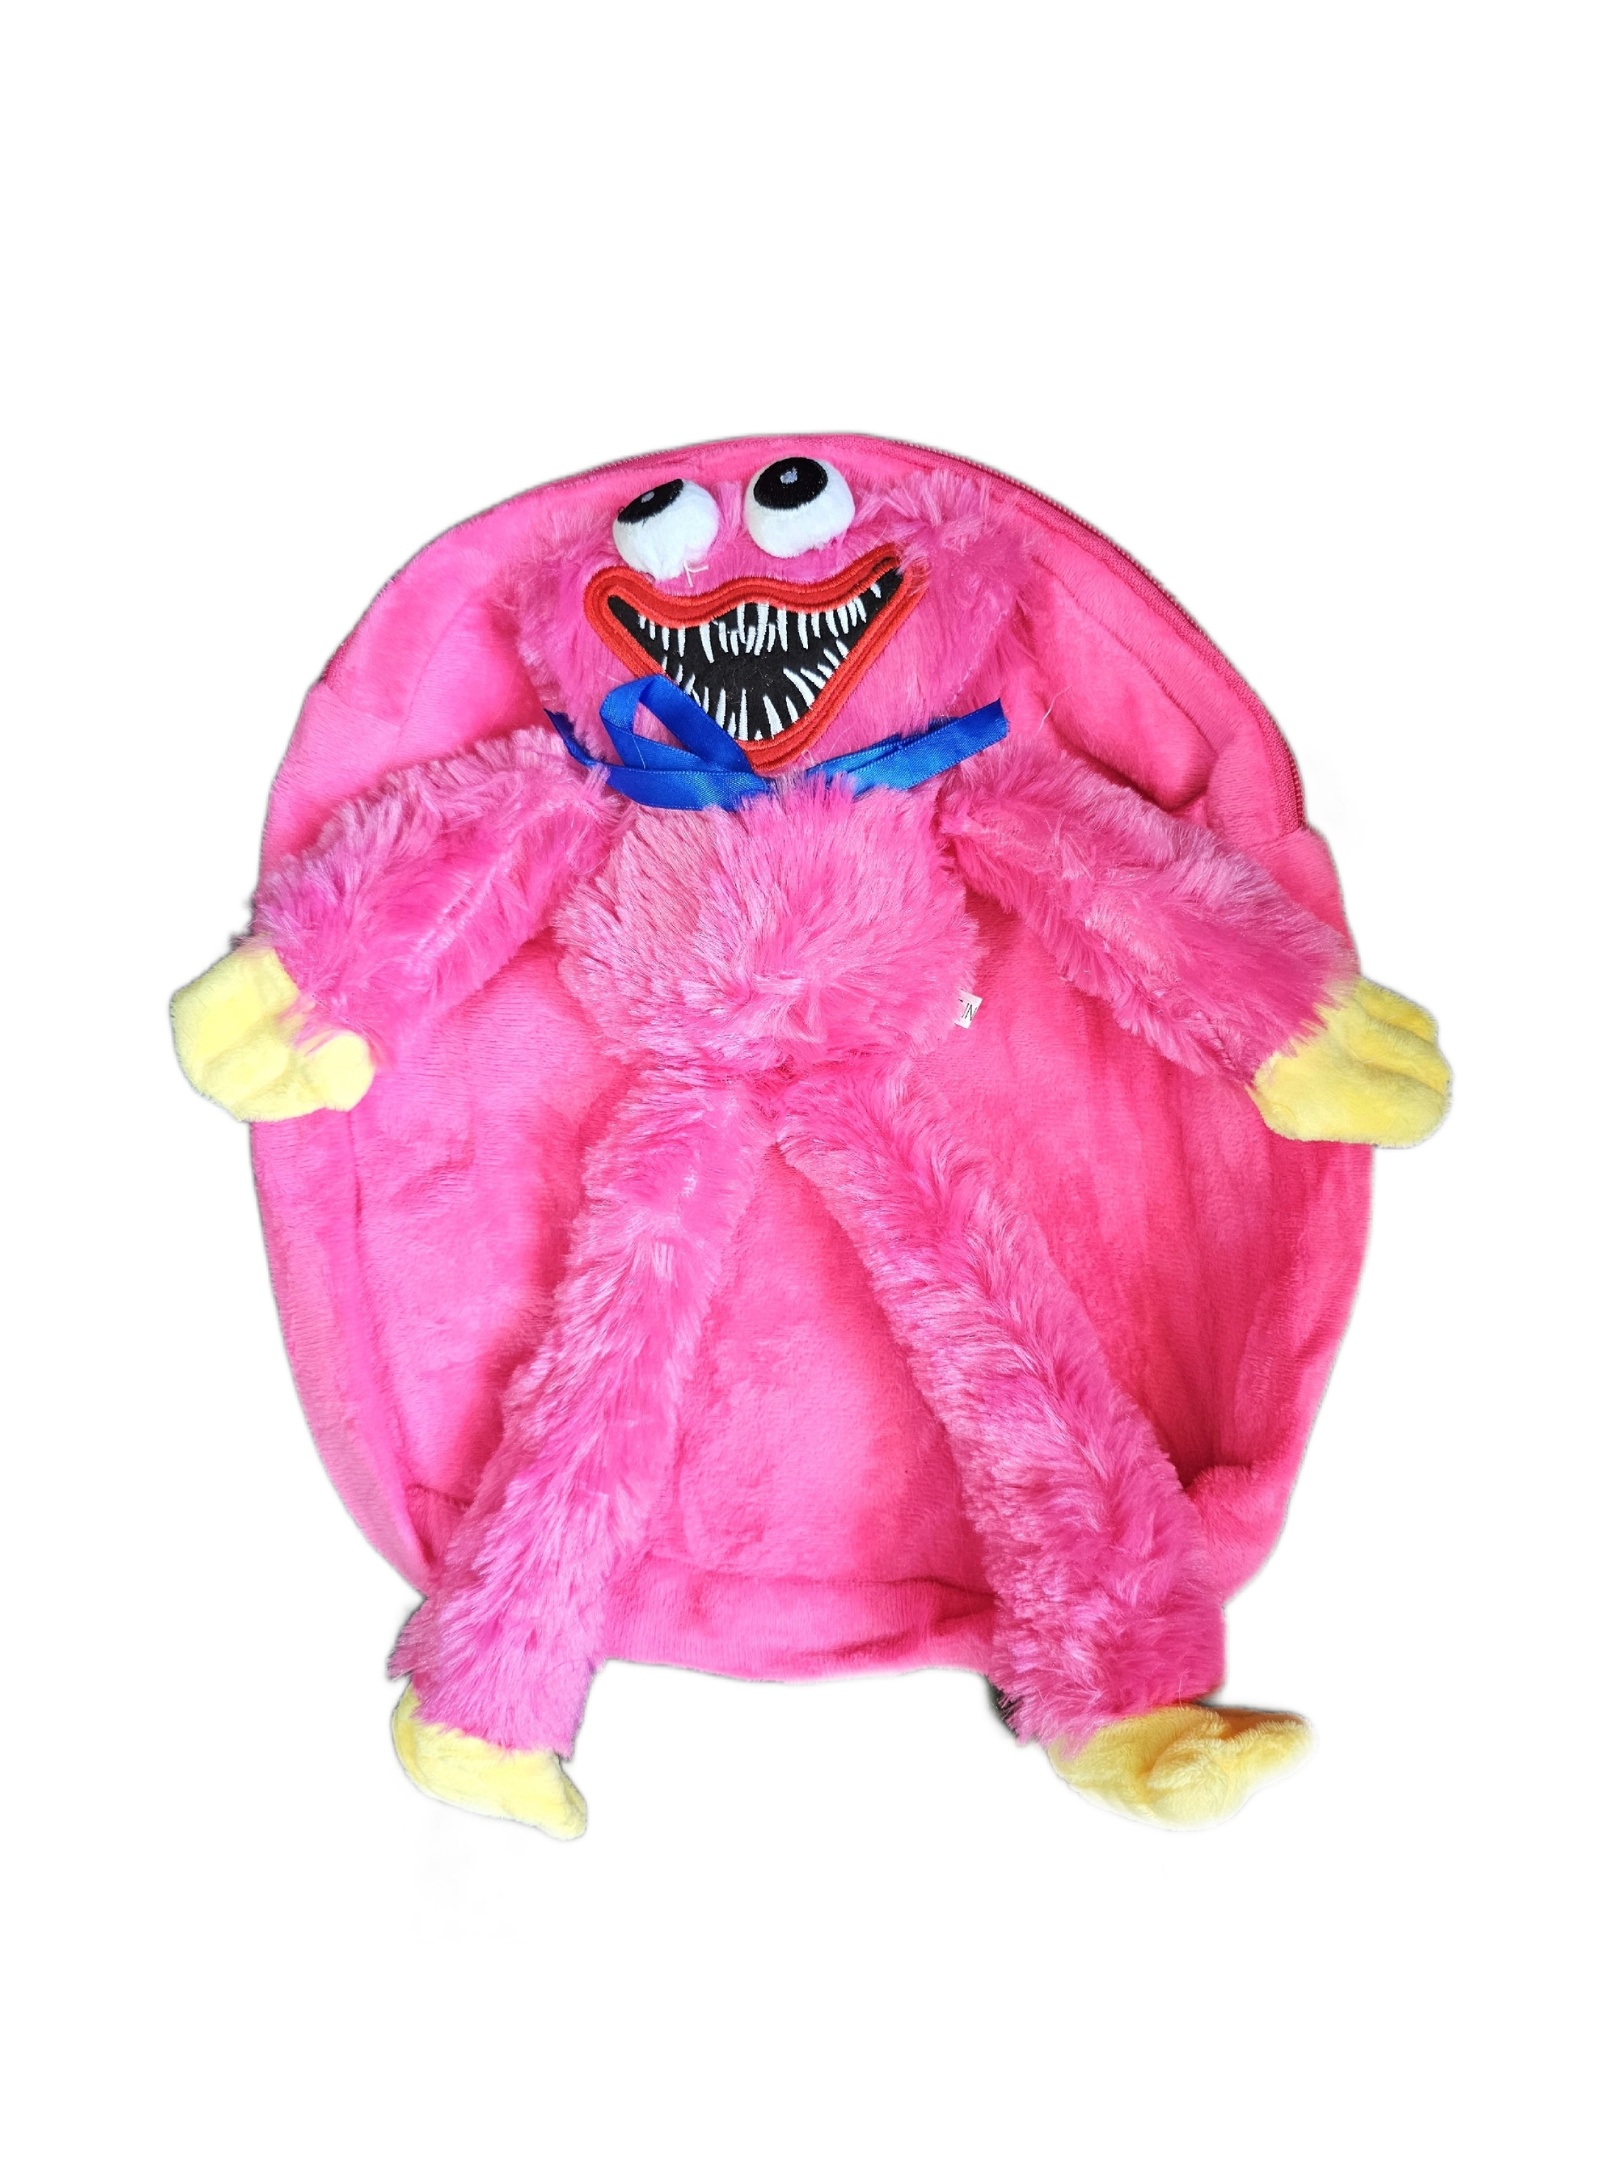 Рюкзак детский плюшевый с игрушкой Кисси Мисси Хаги Ваги, цвет розовый пушистый рюкзак panawealth хагги вагги кисси мисси скари лари красный